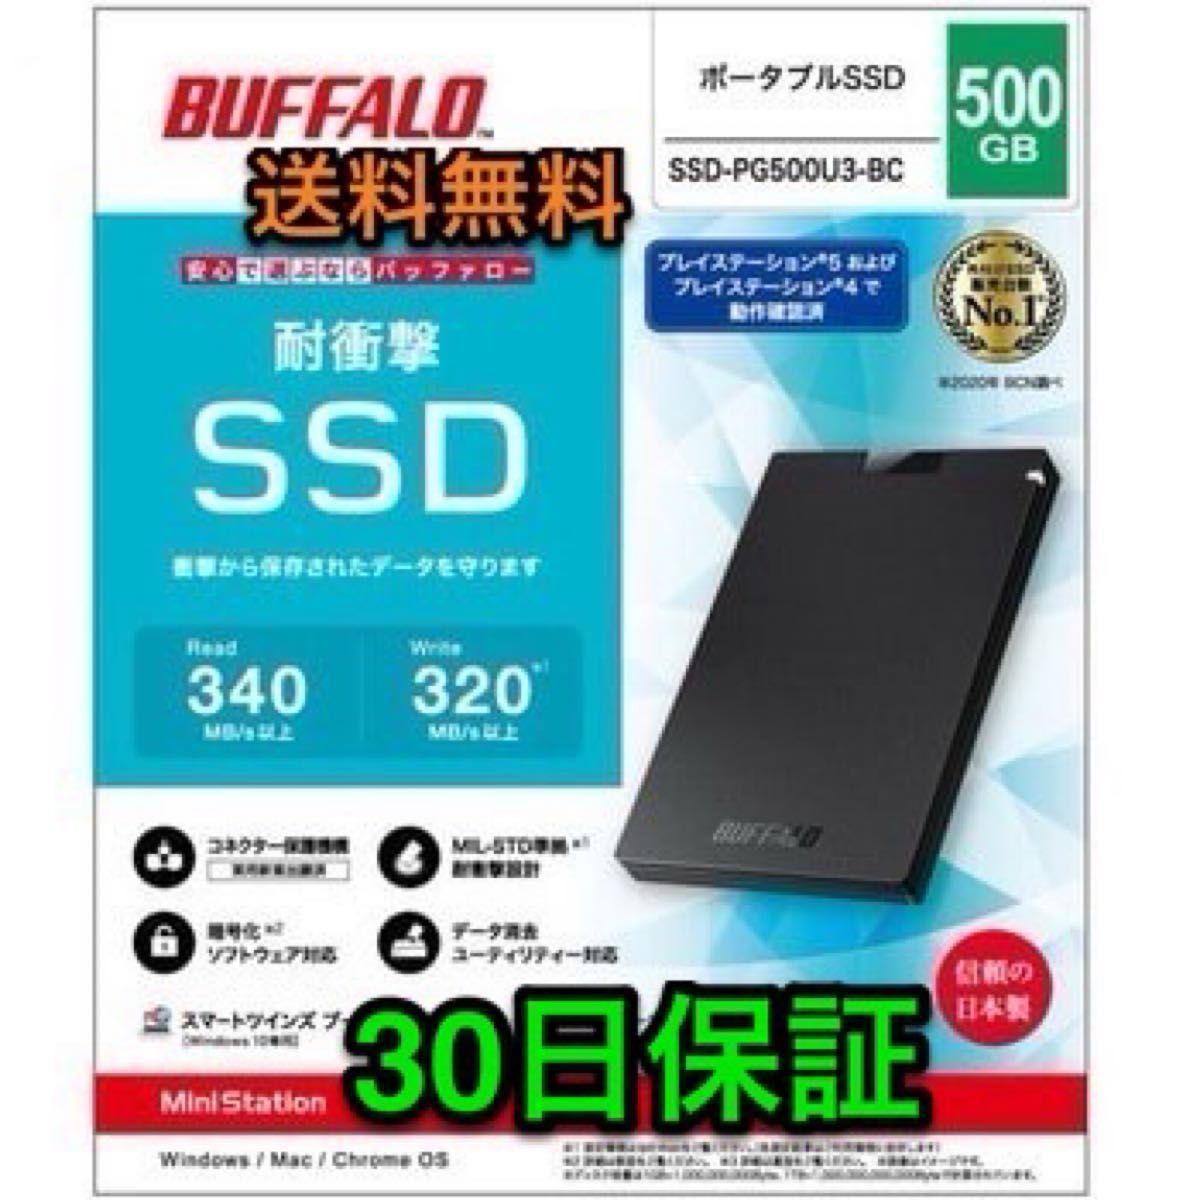 外付けポータブル SSDで高速化★500GB TypeA★Win/Mac/PS5/PS4★バッファローSSD-PG500U3-BC